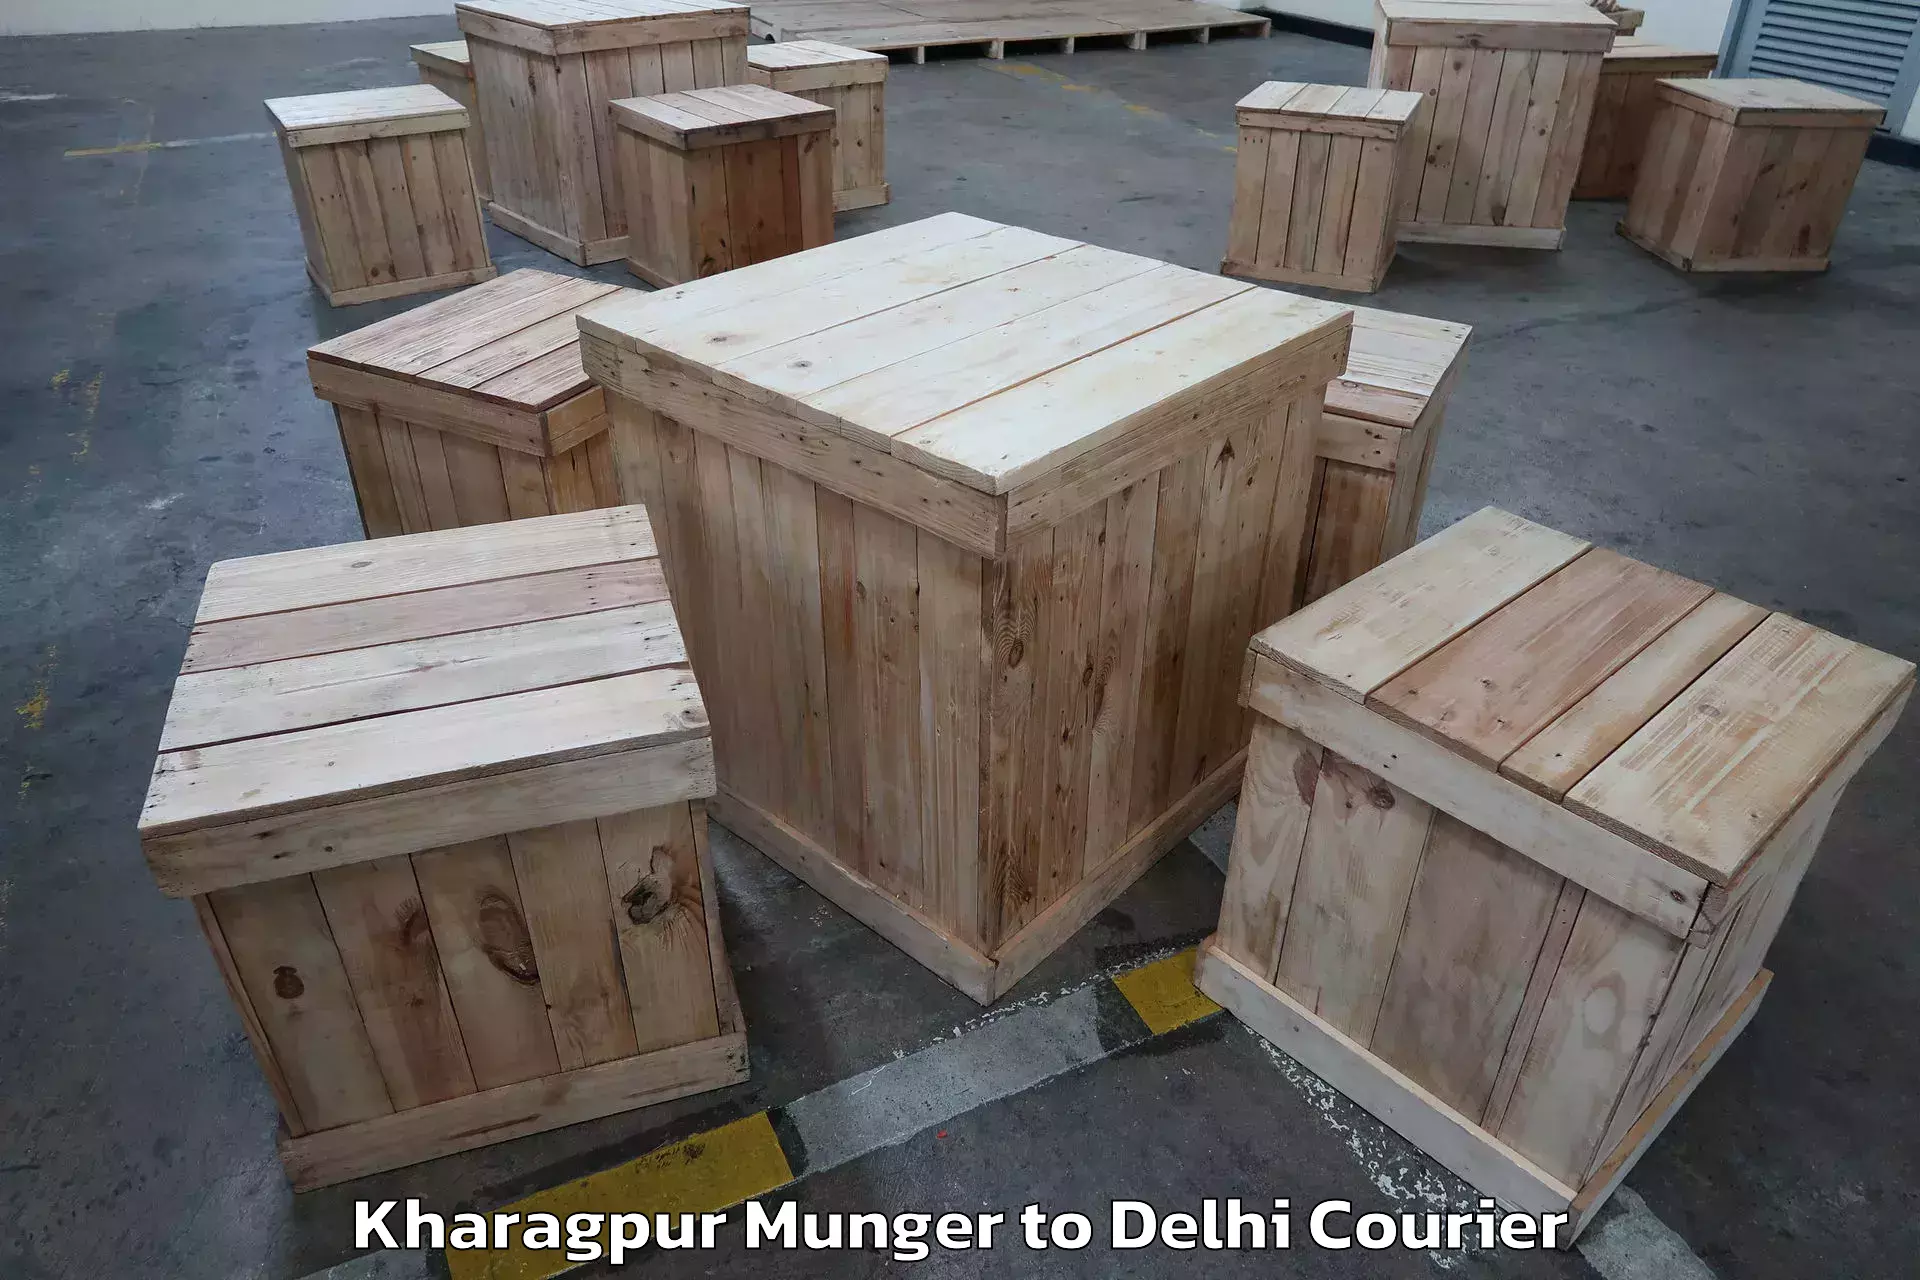 Trusted moving company Kharagpur Munger to Burari